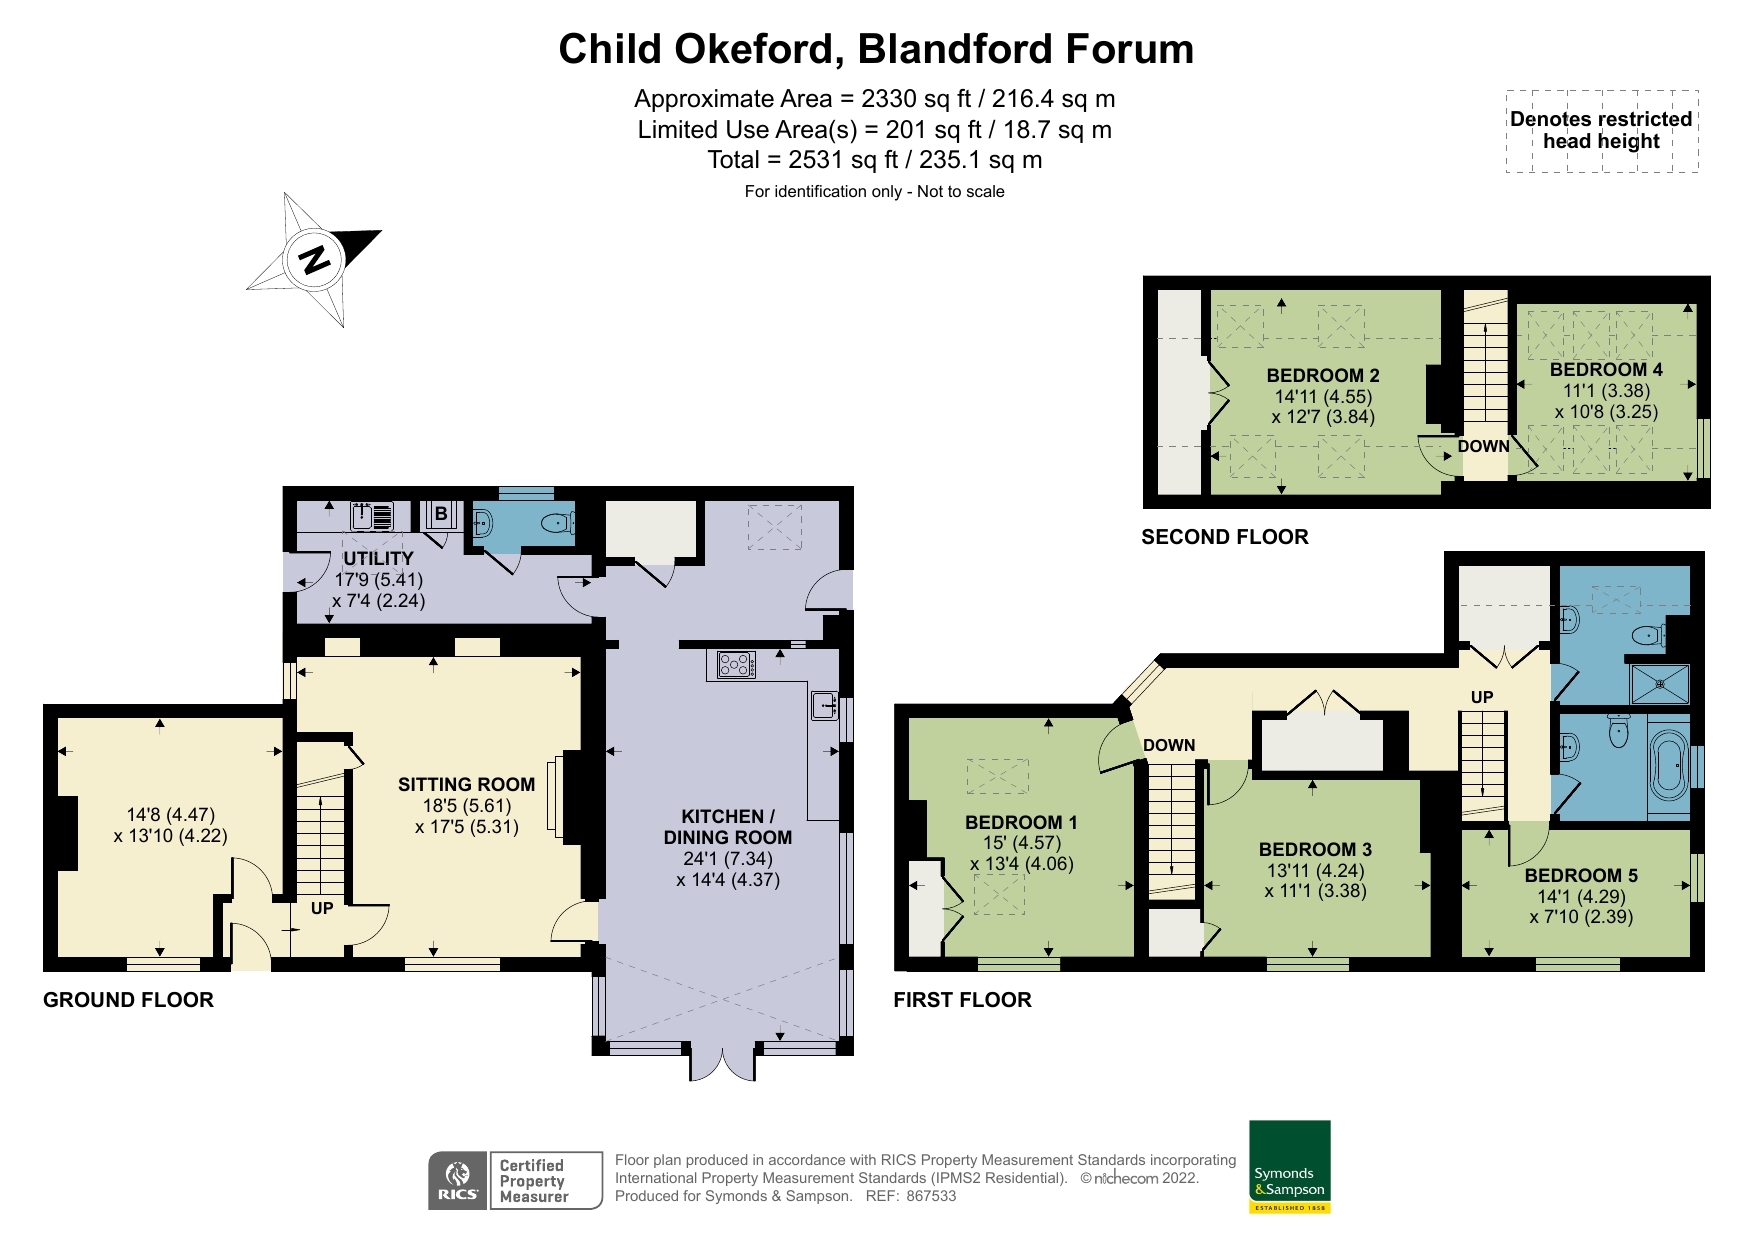 Floorplan - Ridgeway Lane, Child Okeford, Blandford Forum, Dorset, DT11 8HB